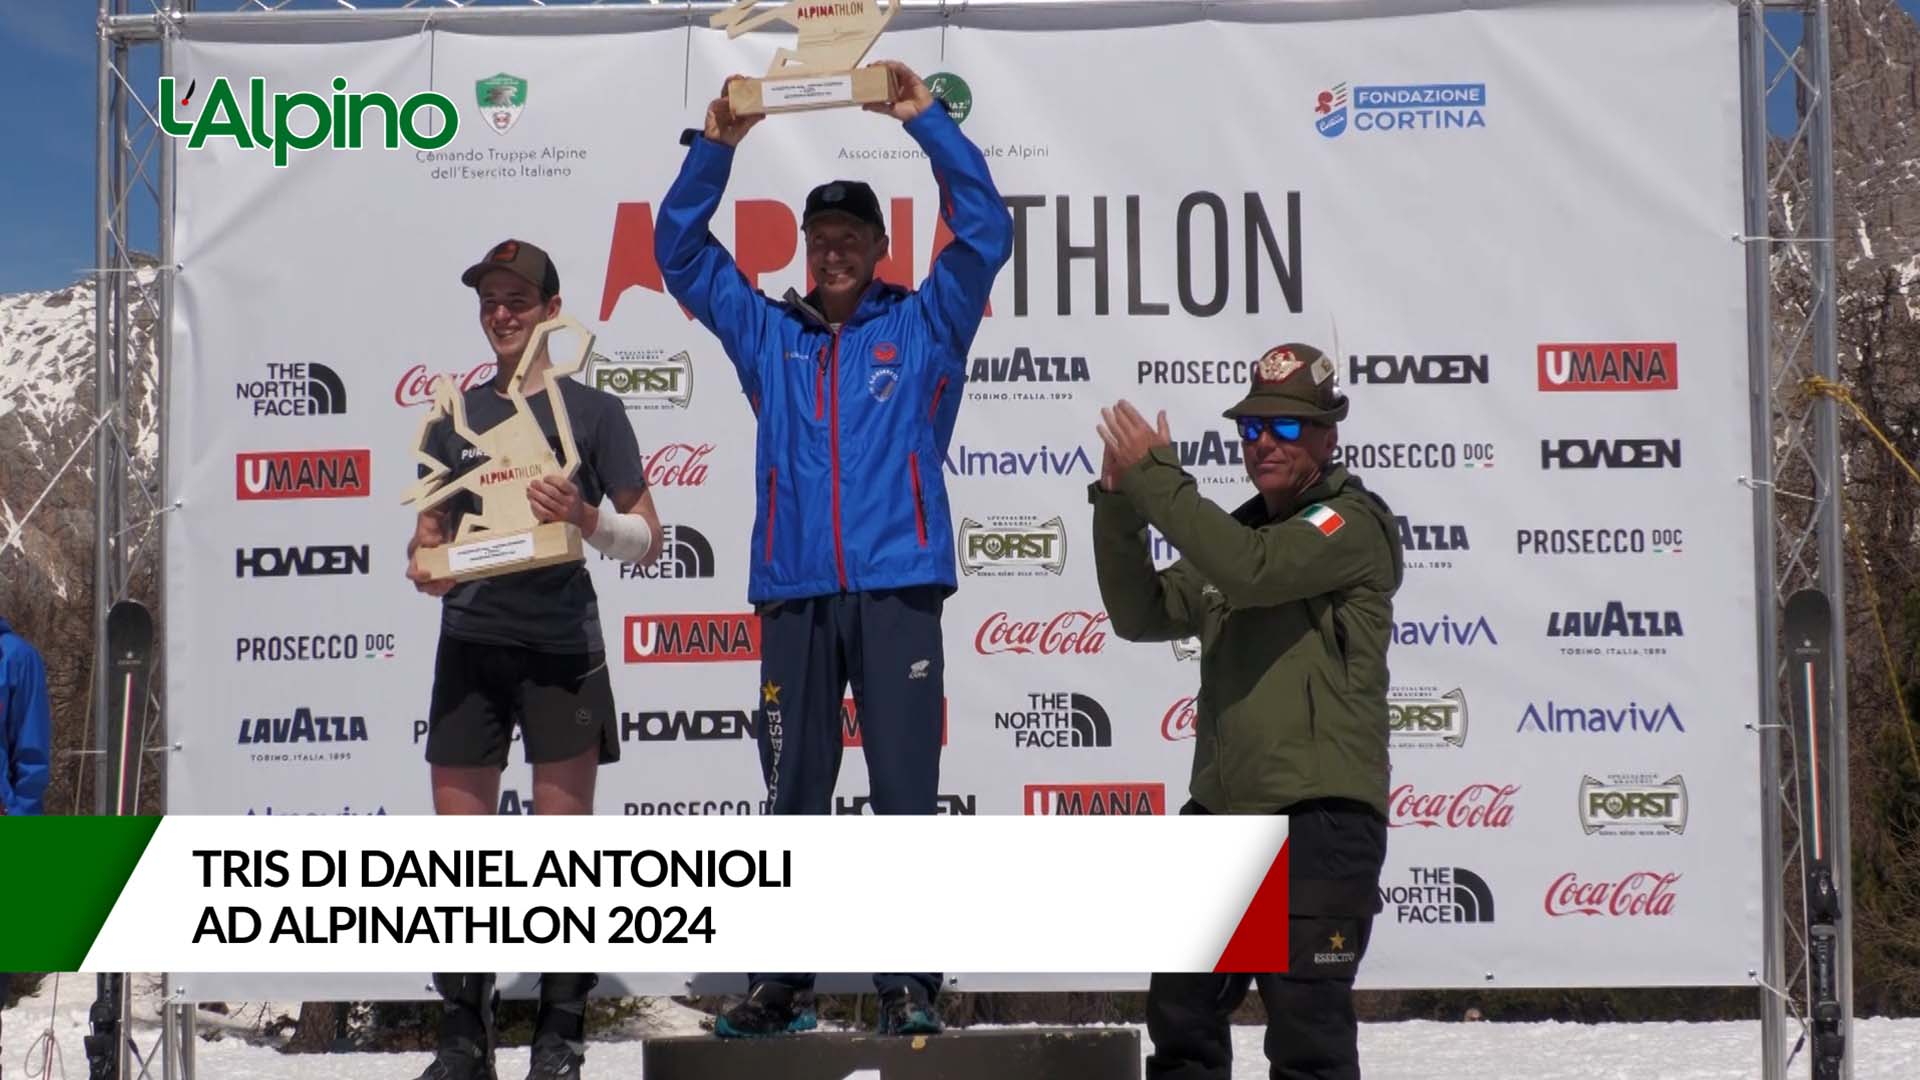 L'Alpino - Tris di Daniel Antonioli ad Alpinathlon 2024